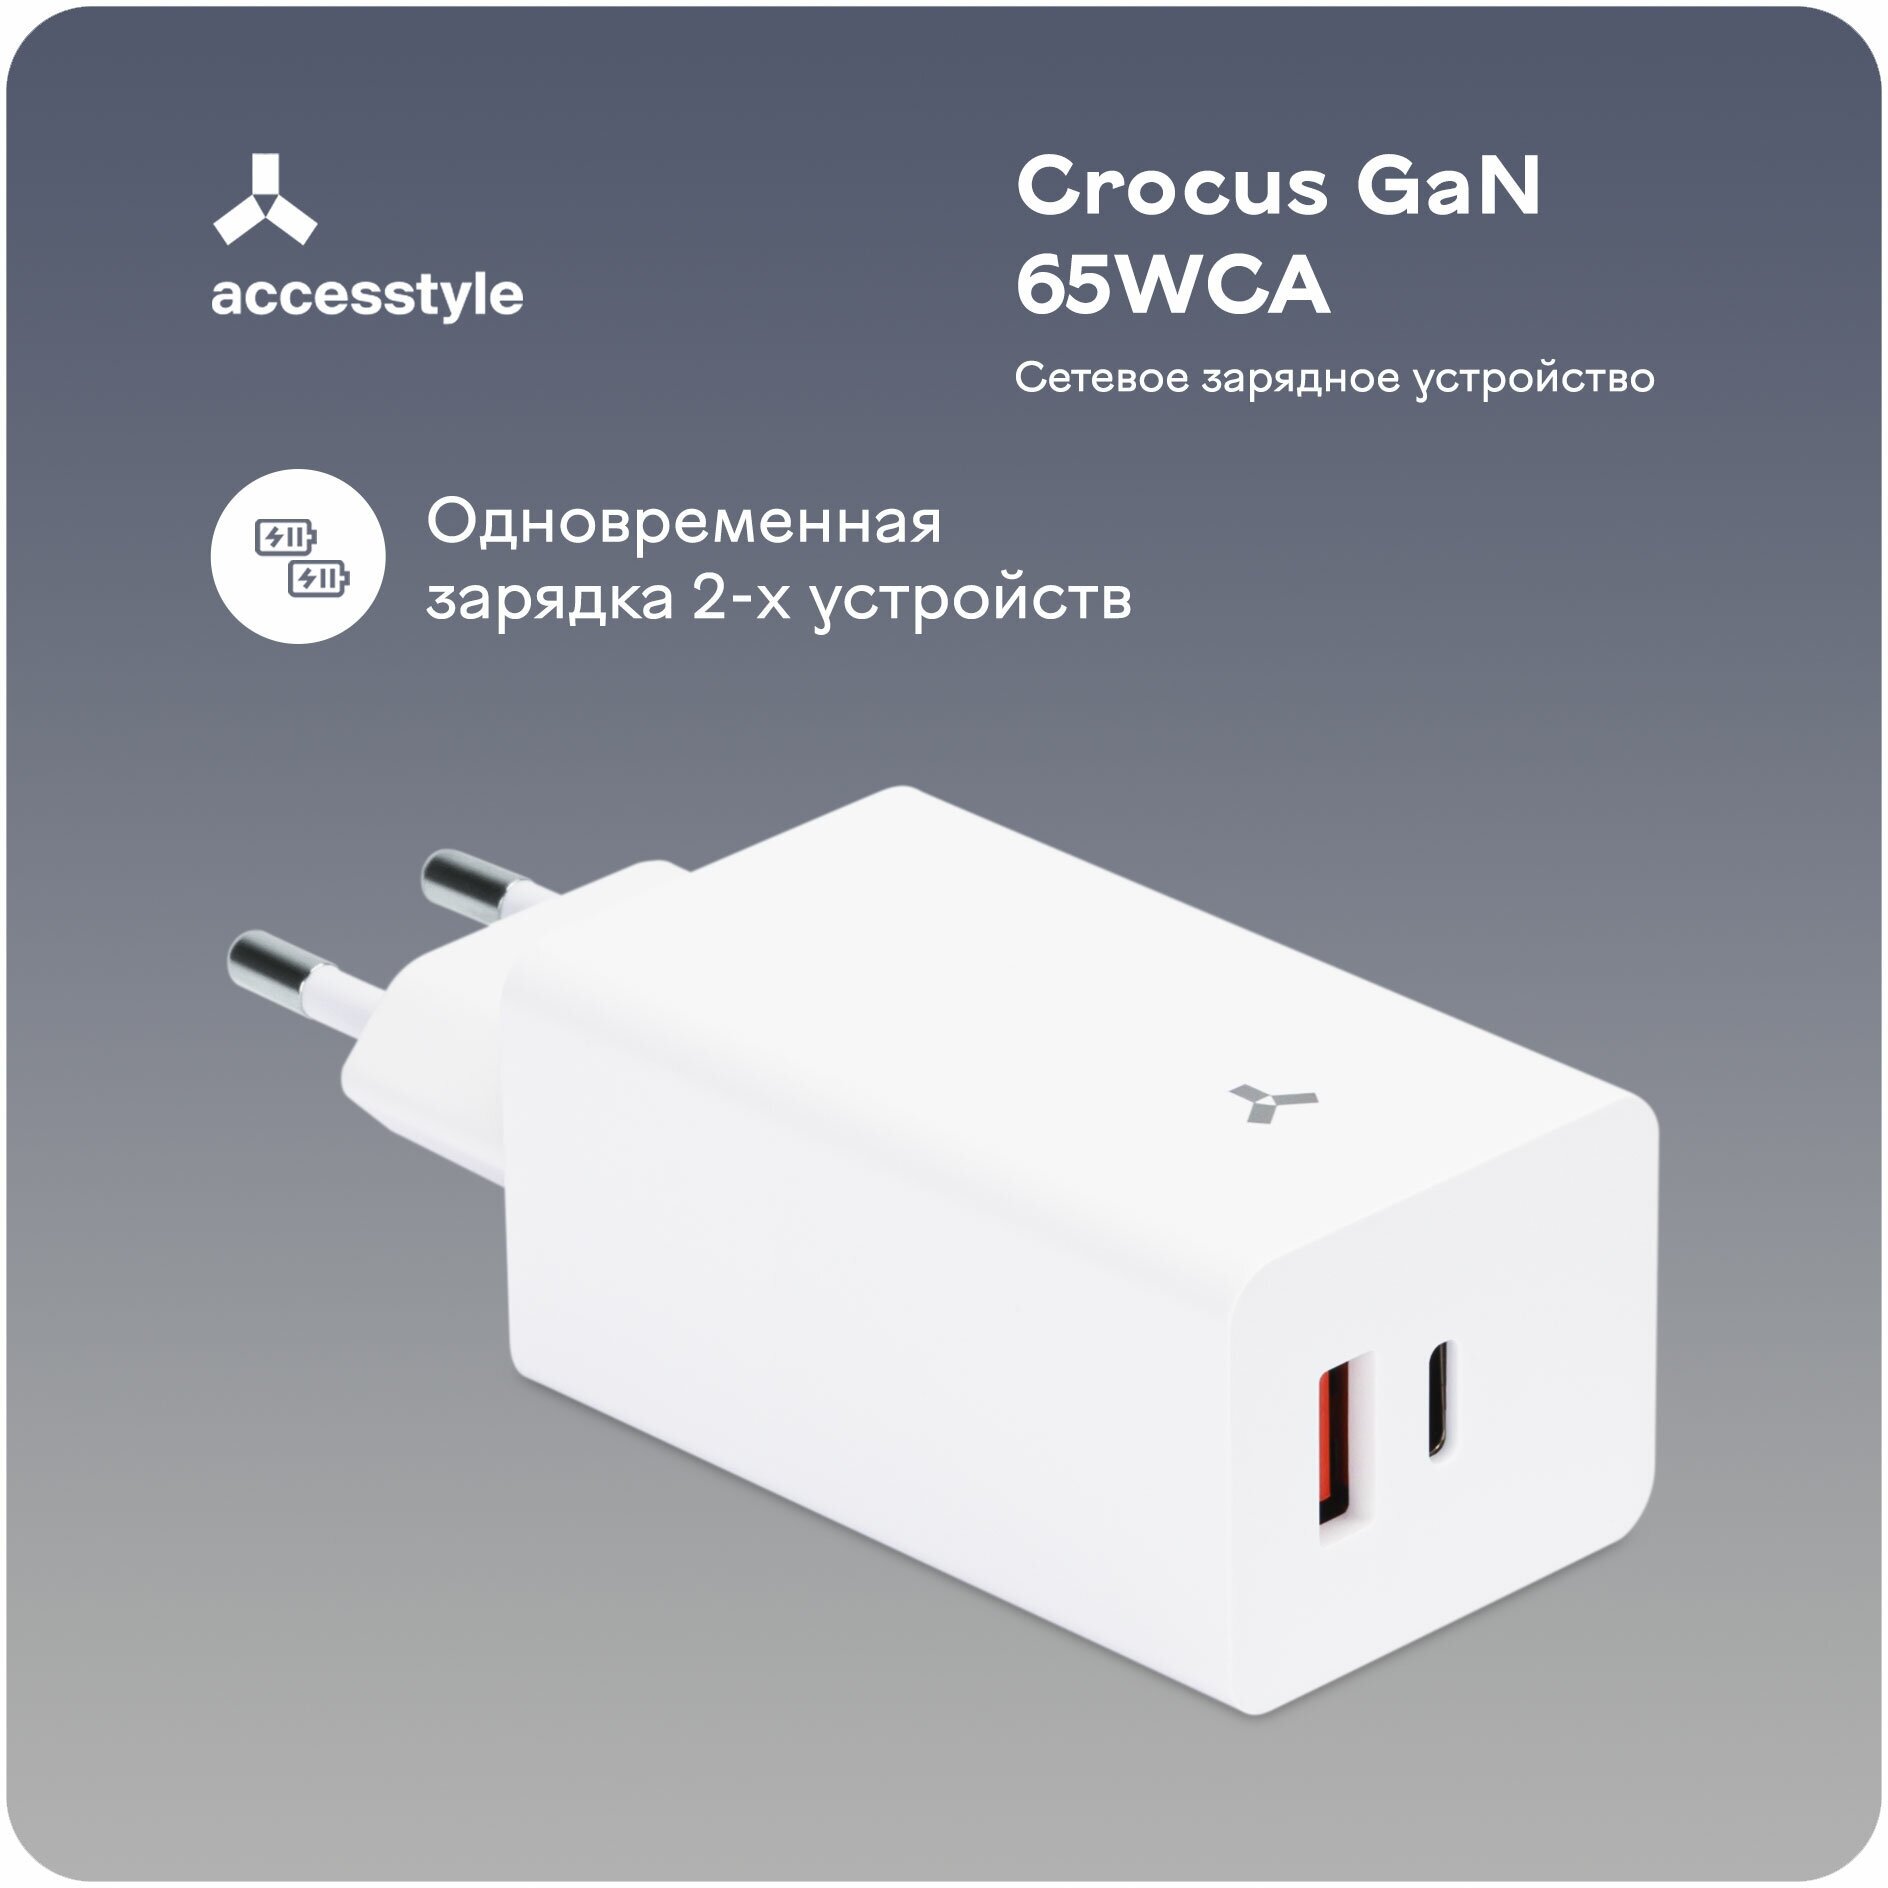 Сетевое зарядное устройство Accesstyle Crocus GaN 65WCA Black - фото №3